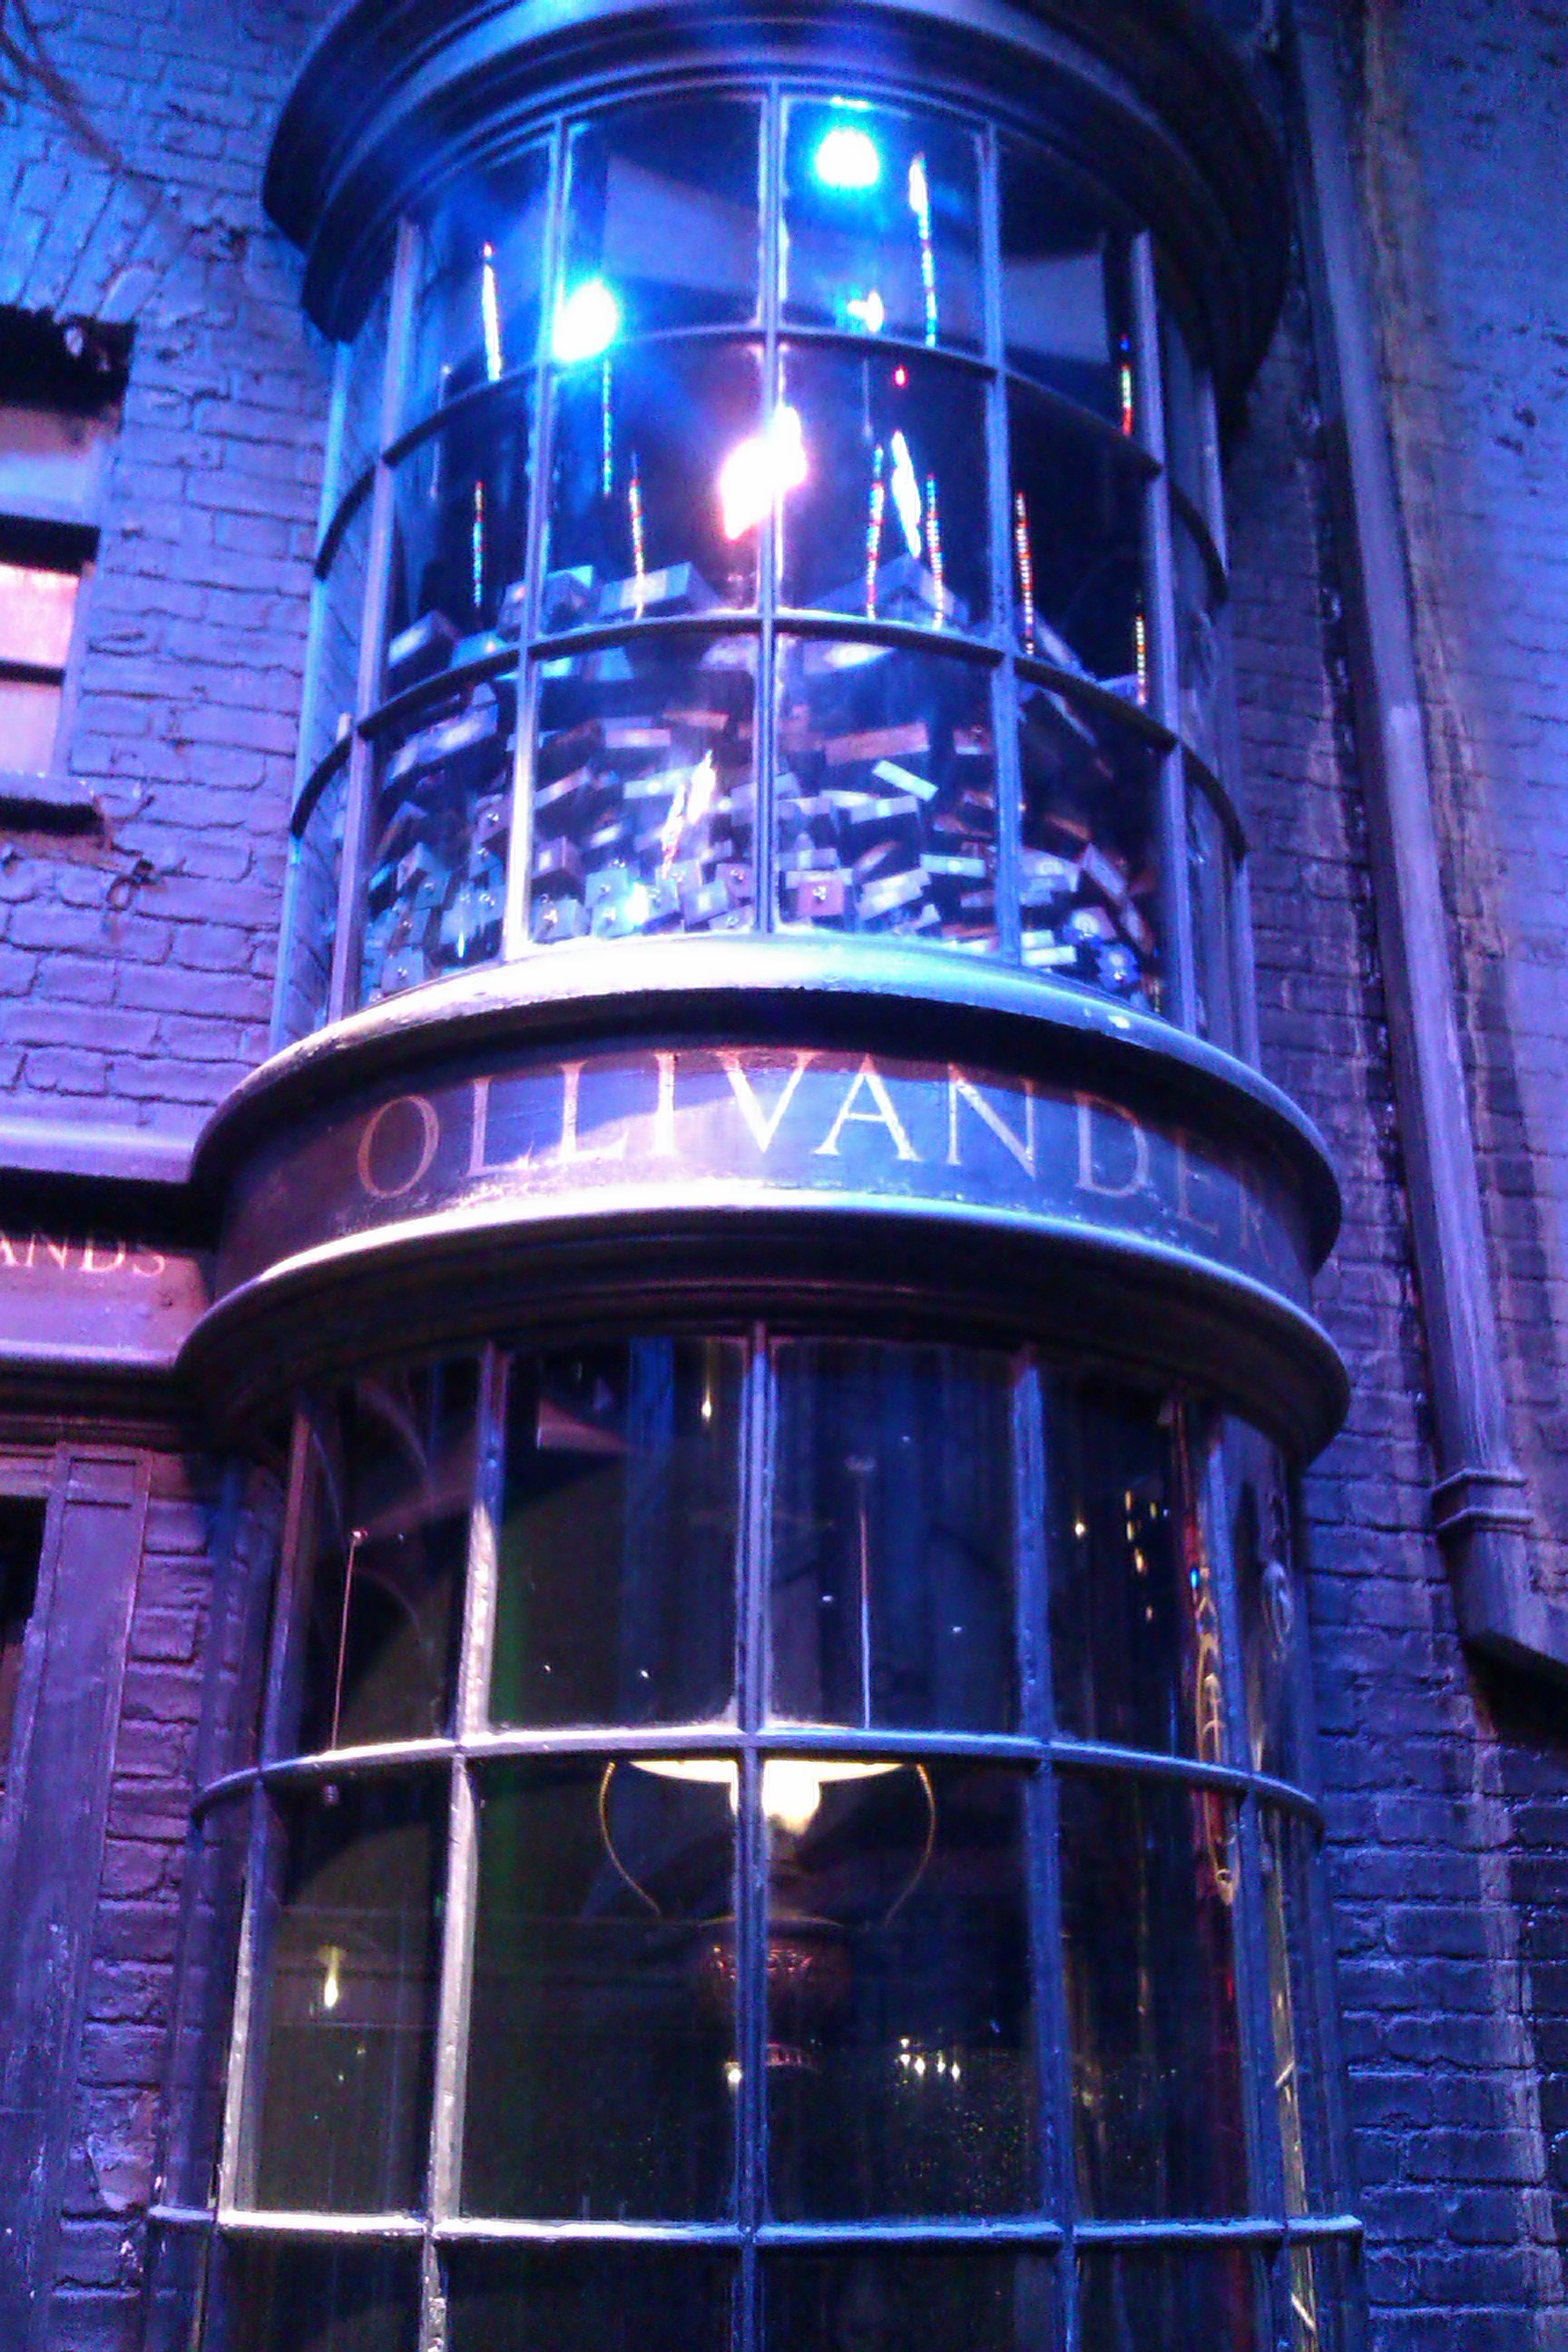 Ollivanders Wand shop